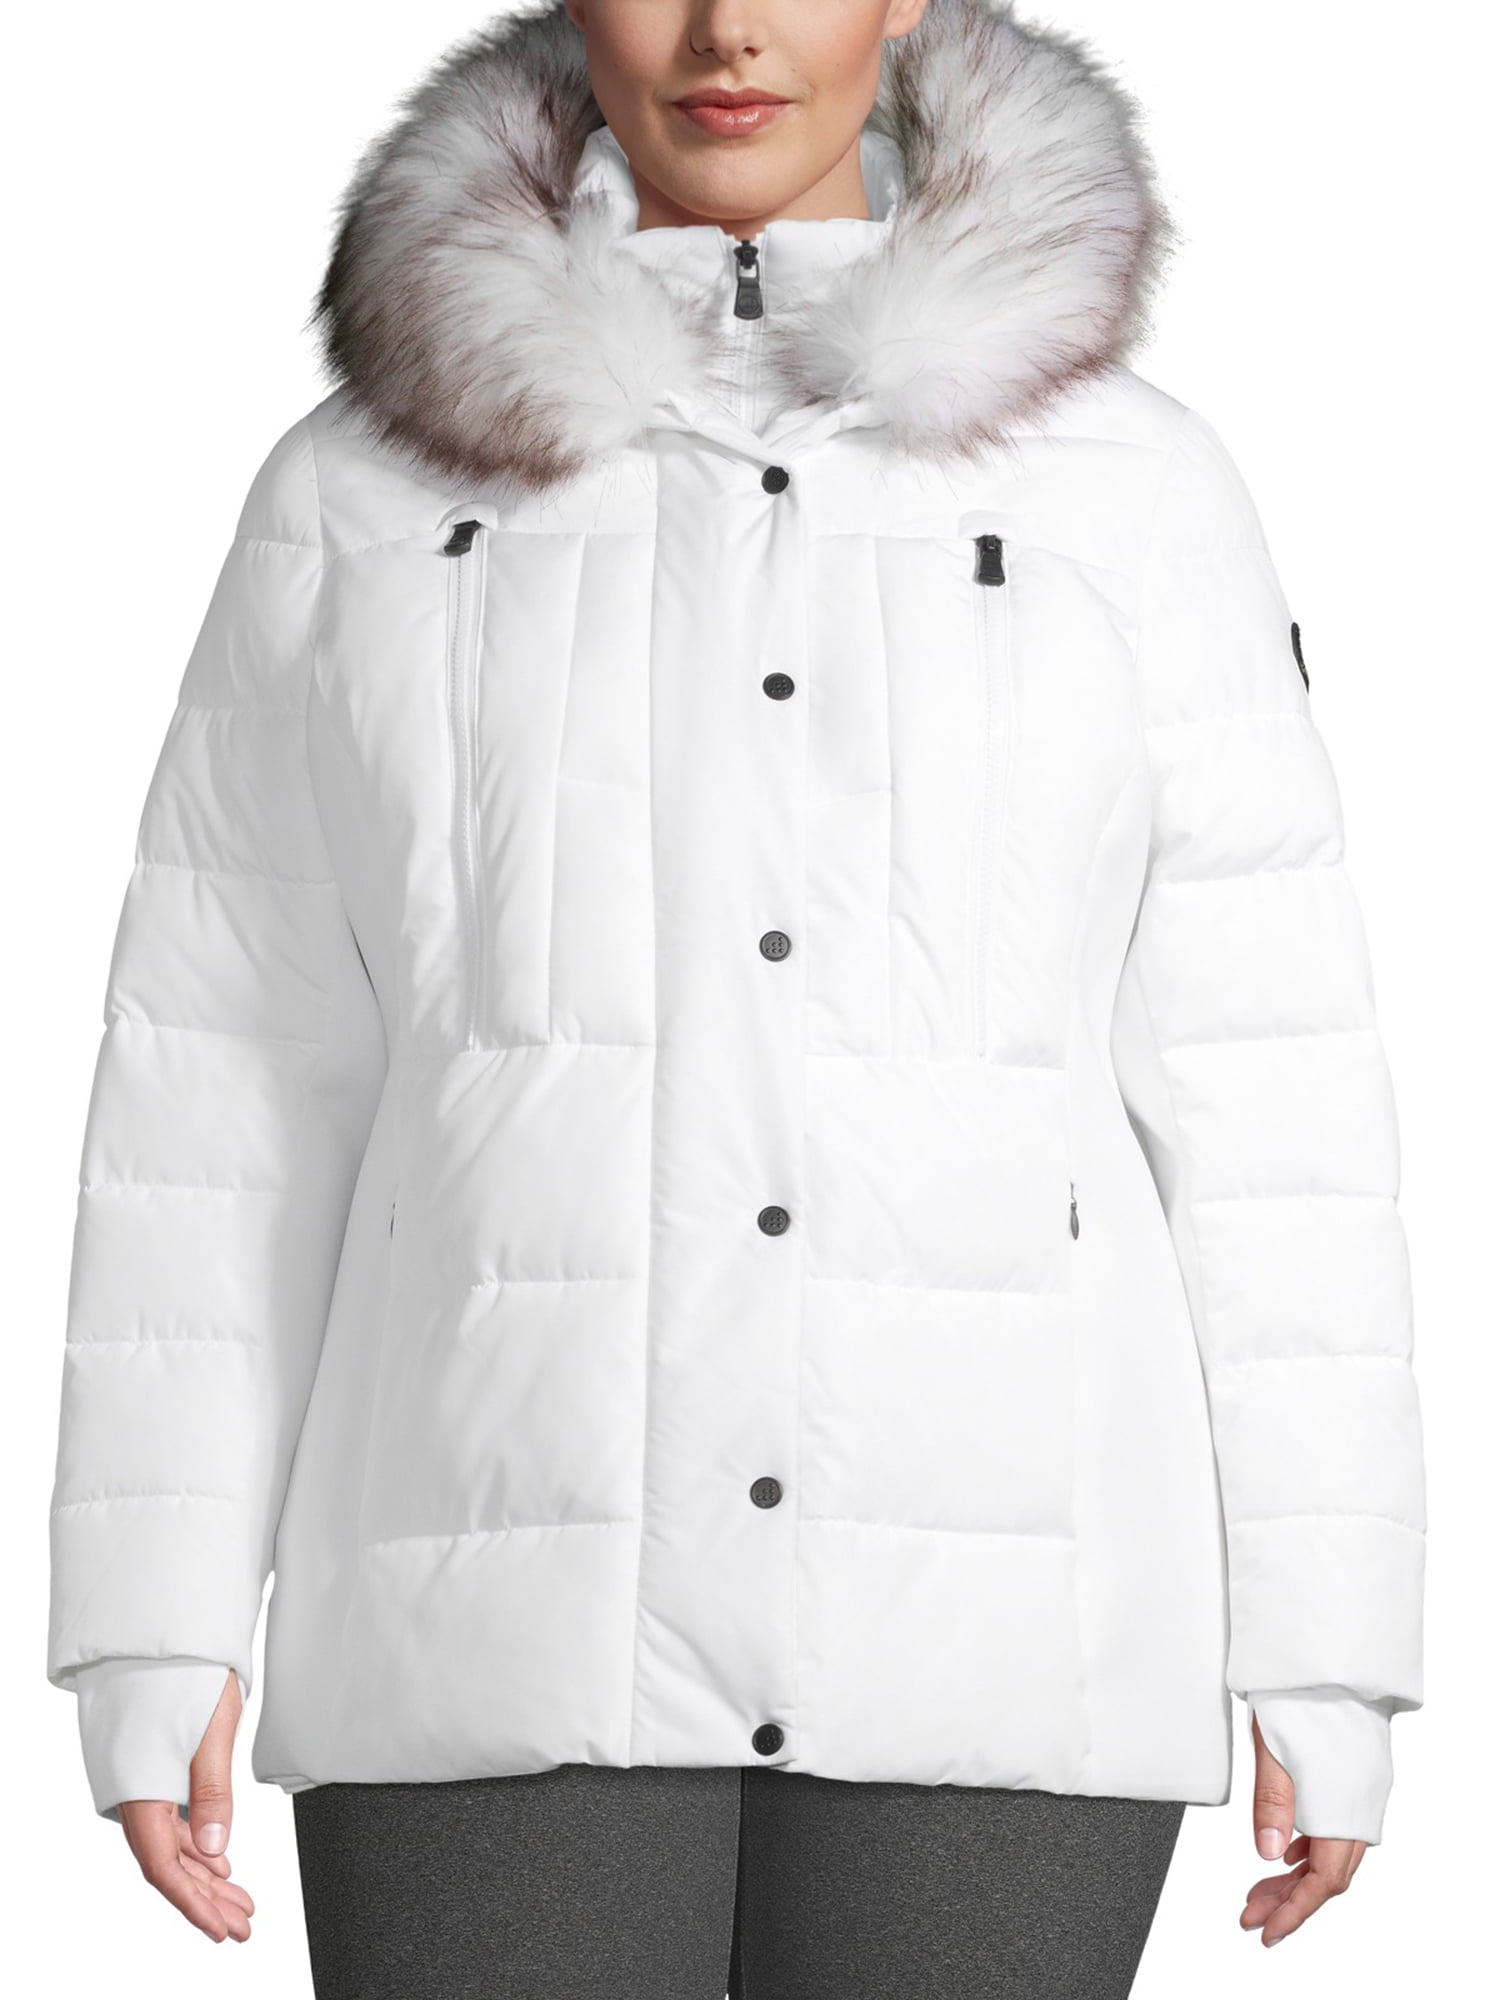 women's short puffer jacket with fur hood